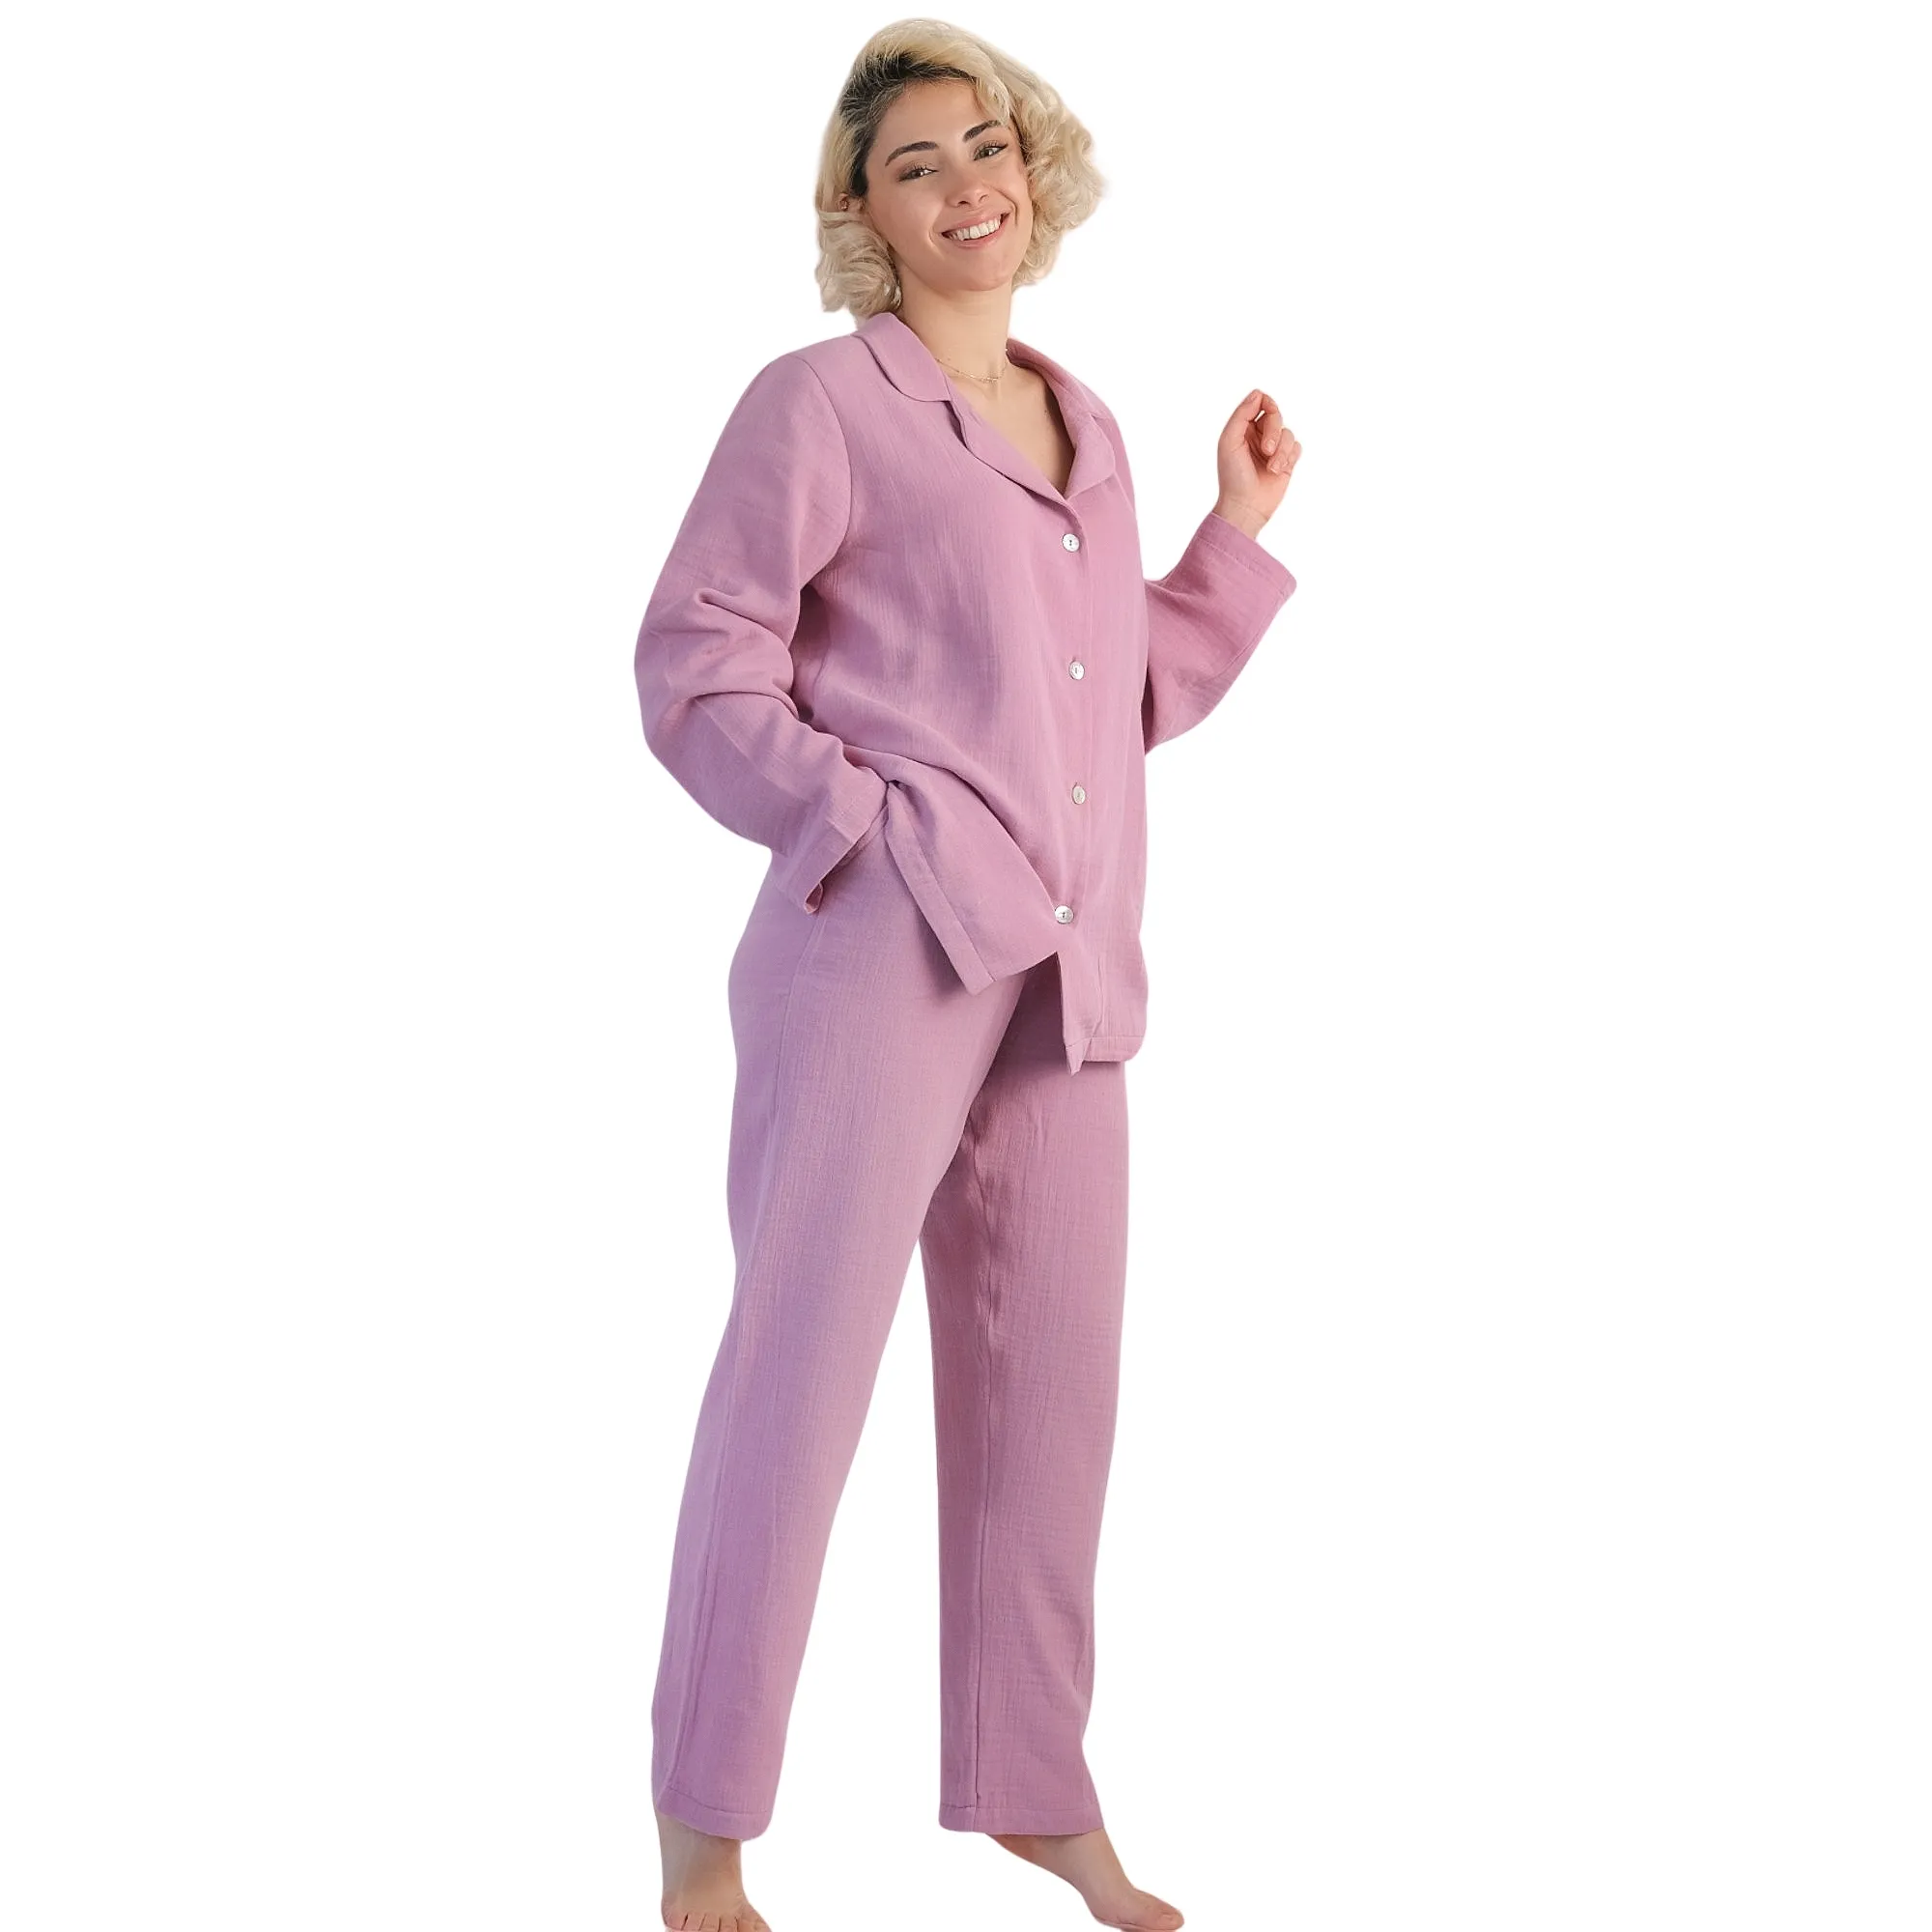 Hongbo fabriqué en turquie pyjamas en mousseline chic pyjamas ensembles pour femmes hauts courts pantalons maison décontracté doux pyjamas ensemble